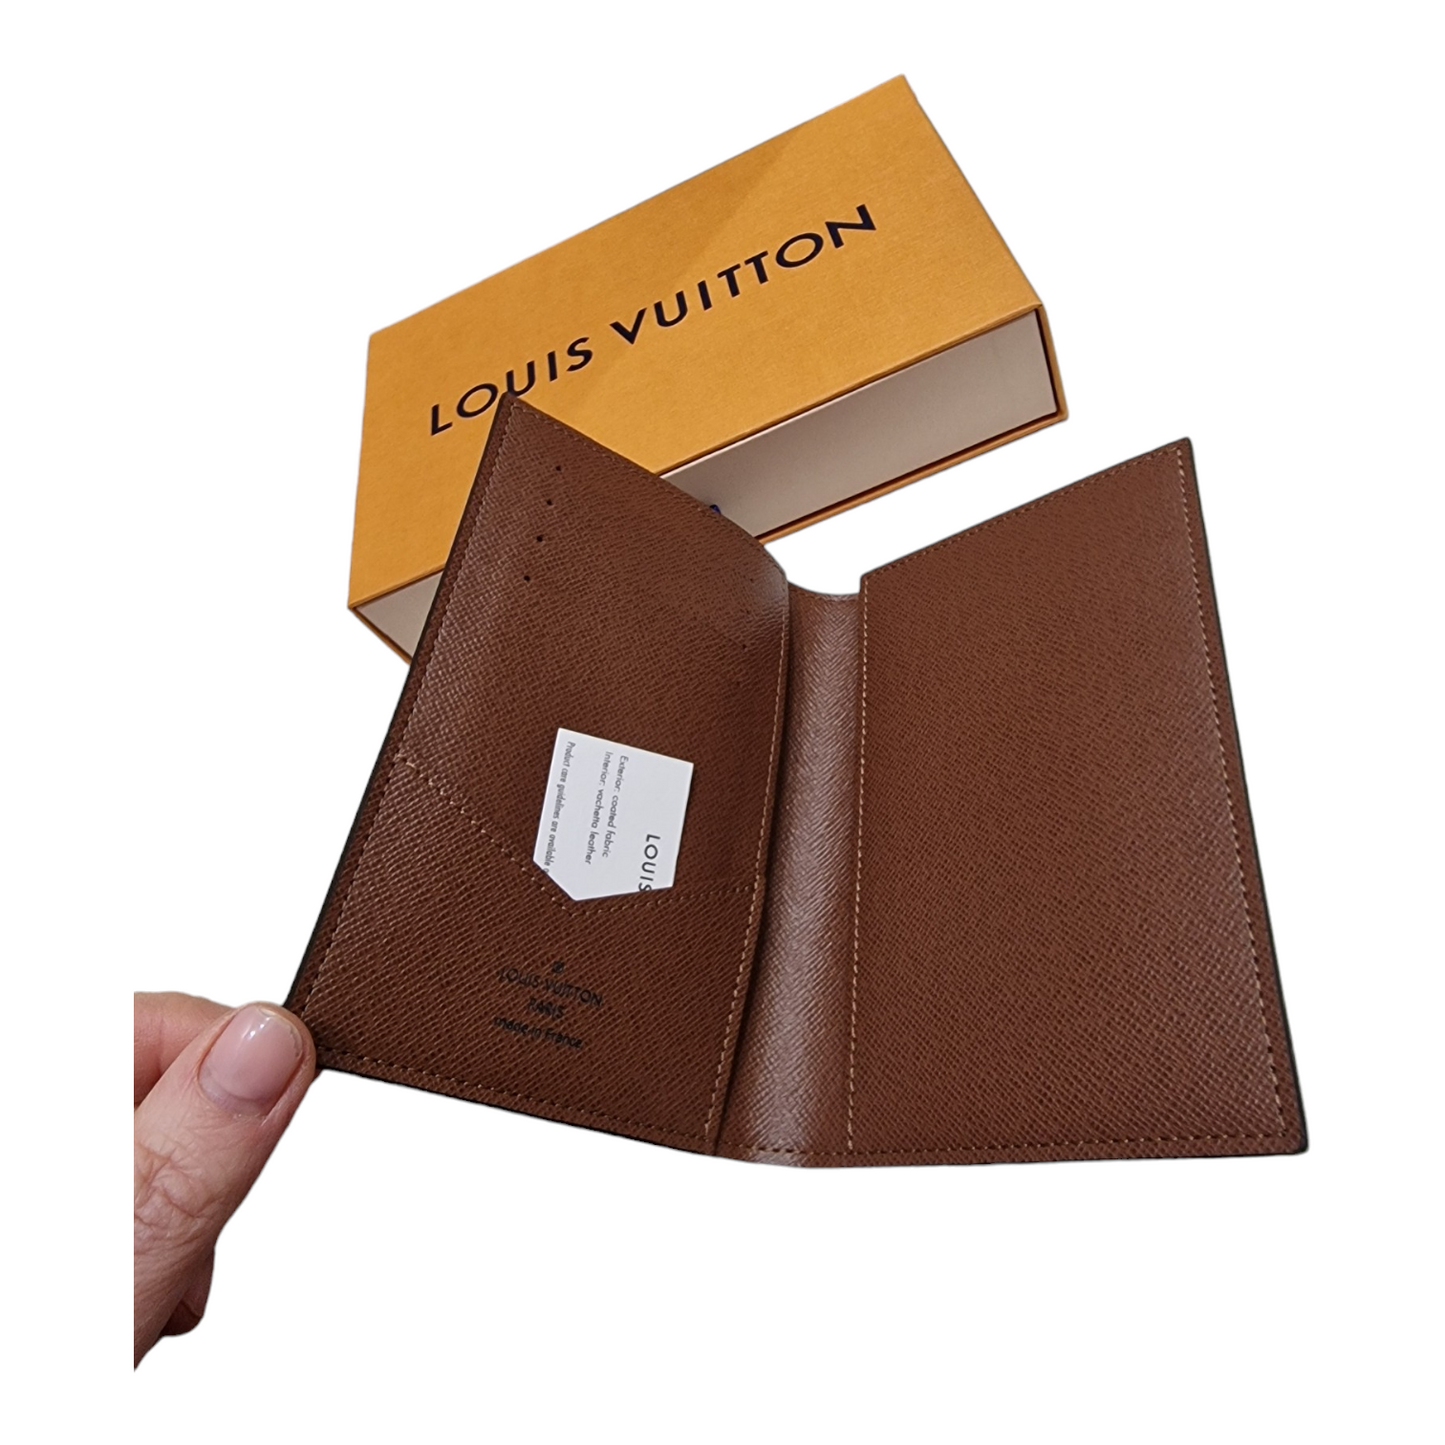 Louis Vuitton Passport wallet, brand new